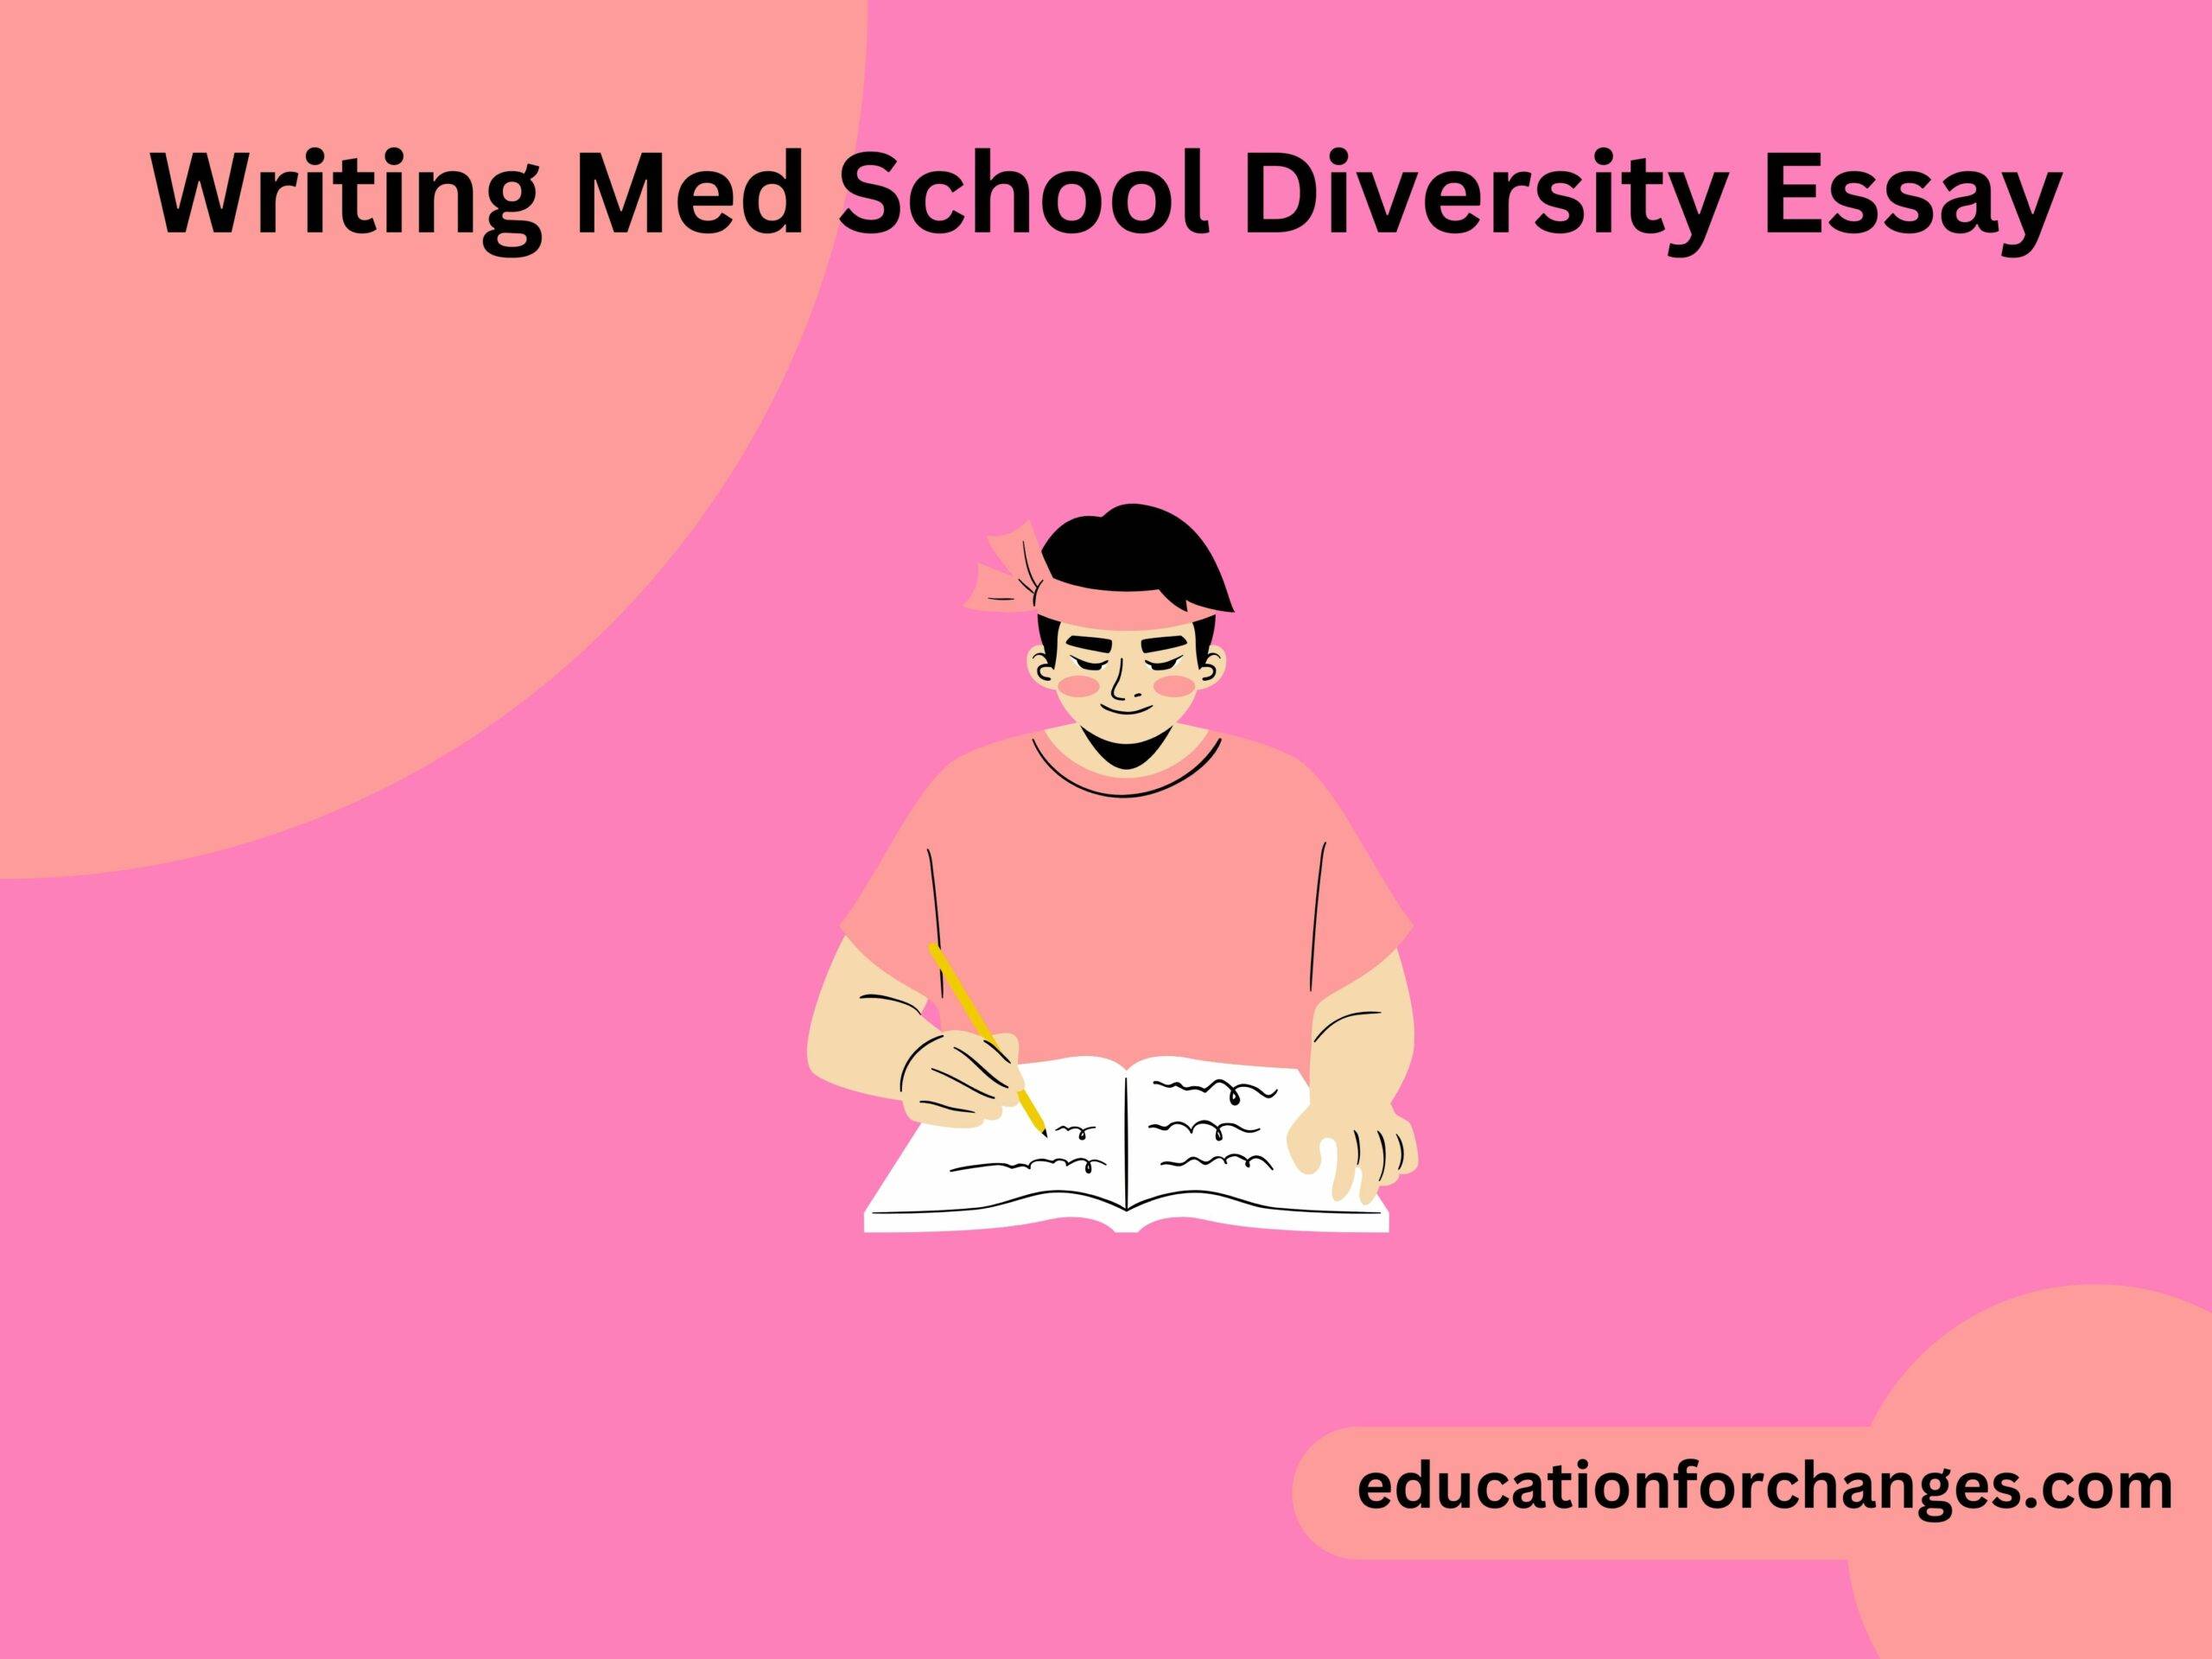 Writing Med School Diversity Essay